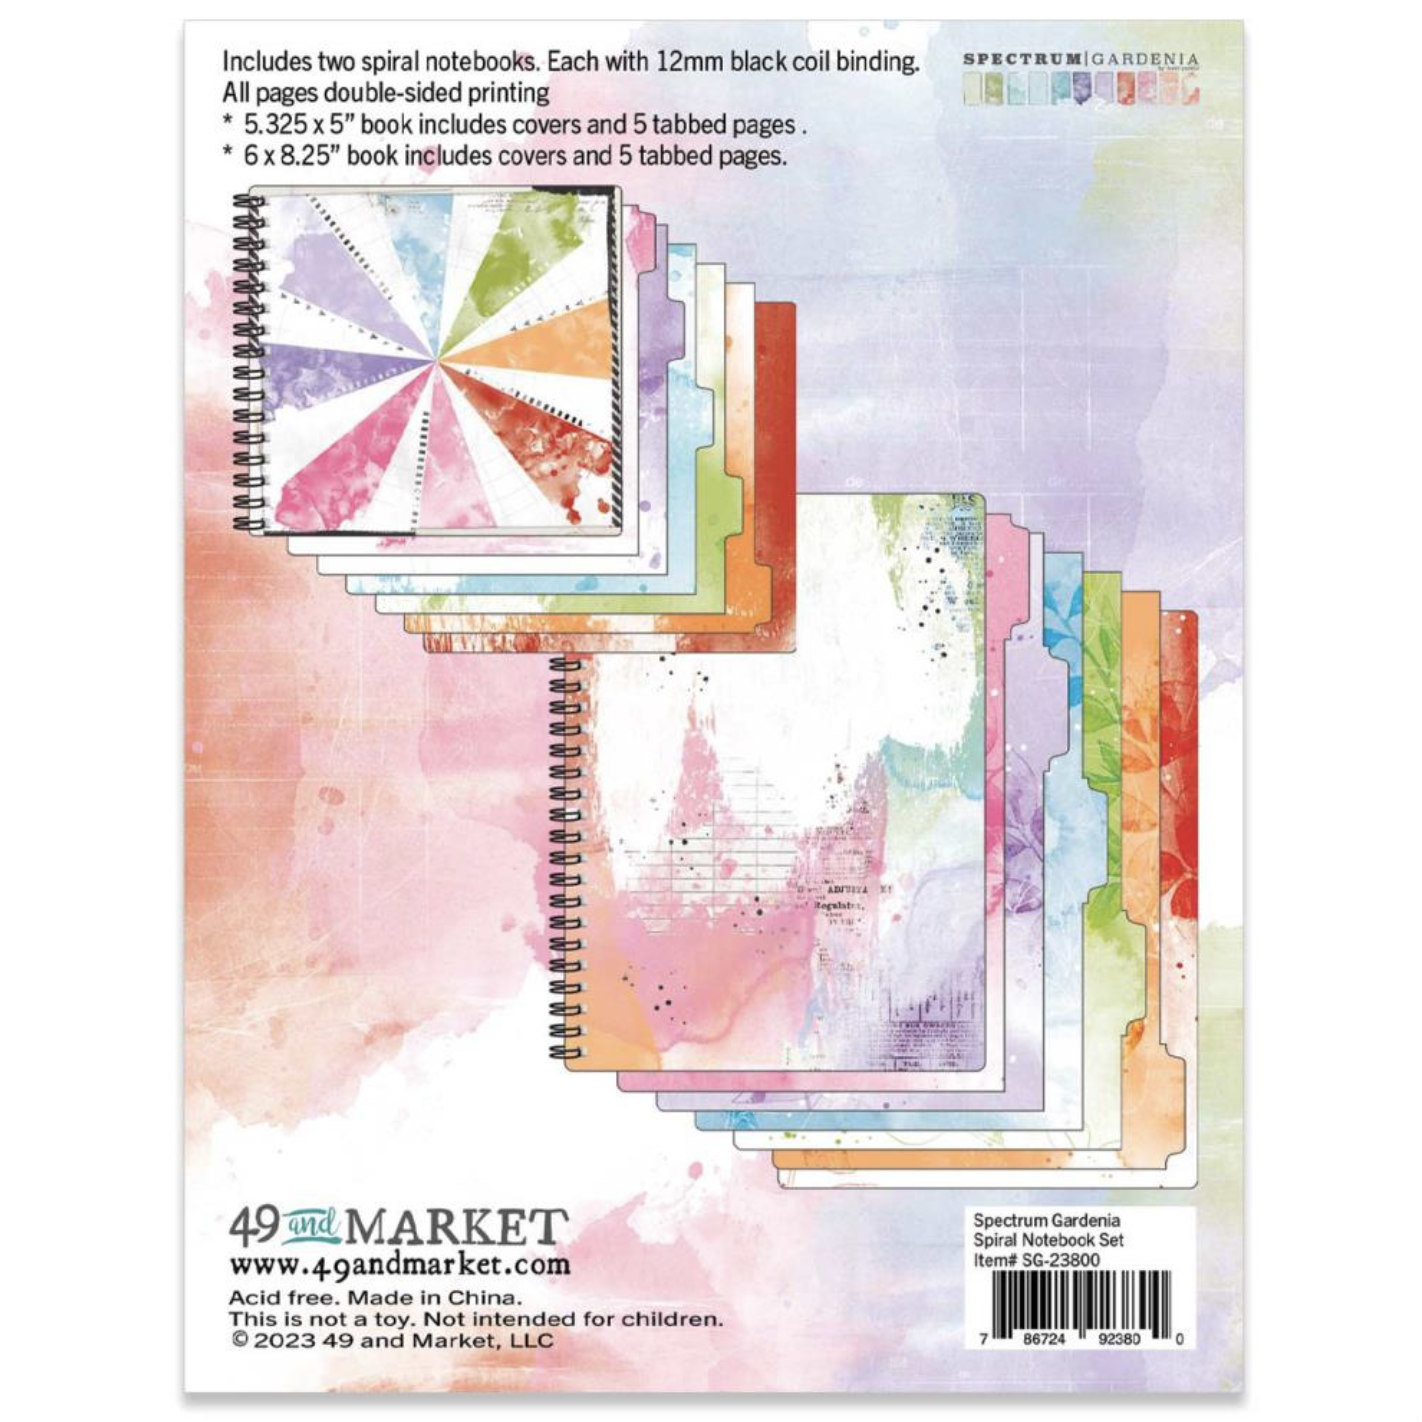 49 and Market 2-Pack Spiral Notebook: Spectrum Gardenia